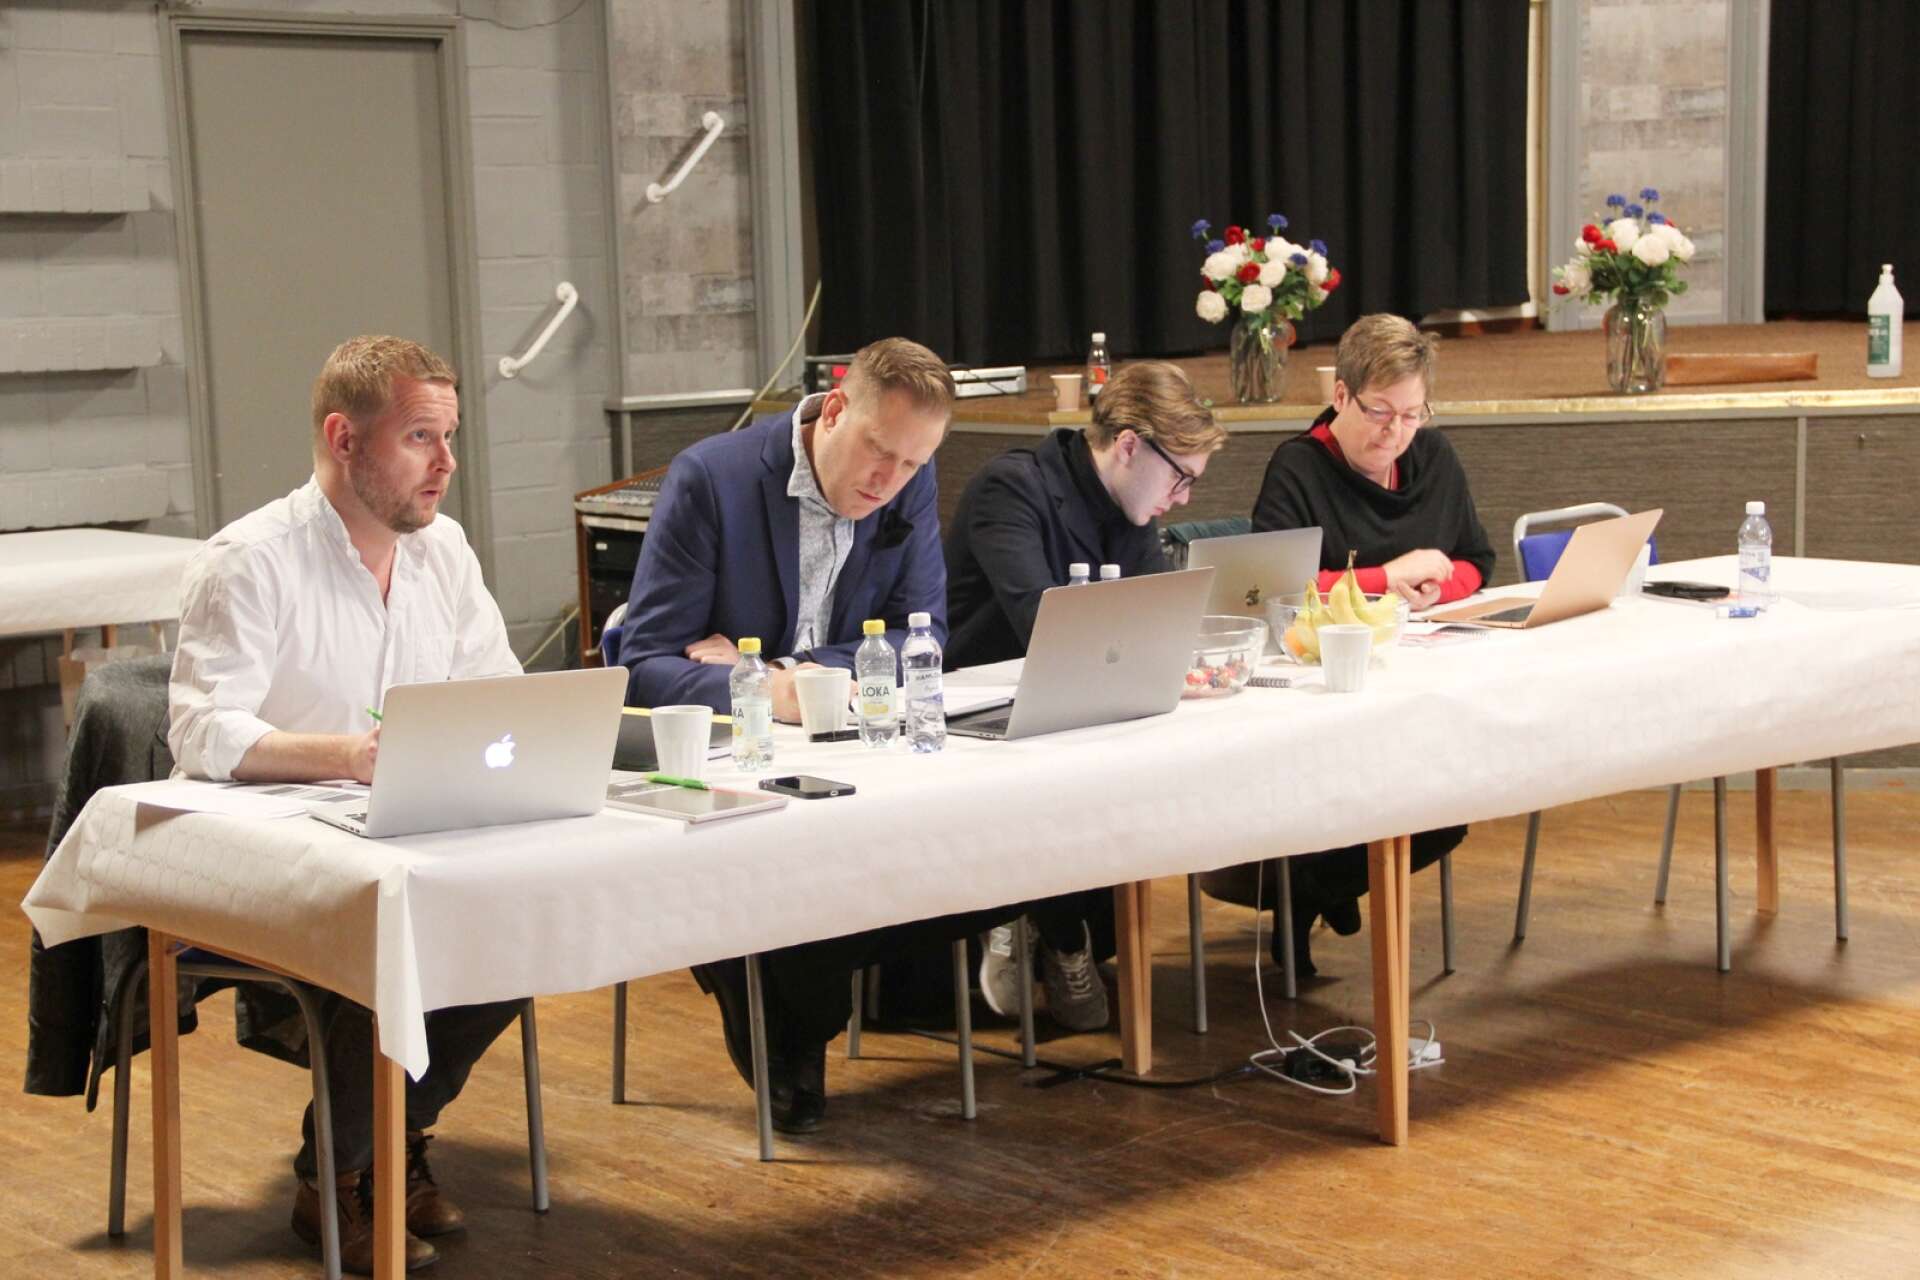 Säffleoperan kommer att ha auditions den här veckan i både Göteborg och Säffle. På bilden från vänster: Mattias Palm, regissör, Tobias Norelius och Oskar H Olsson, producenter, och Christina Carlsson, kostymdesigner och coach.